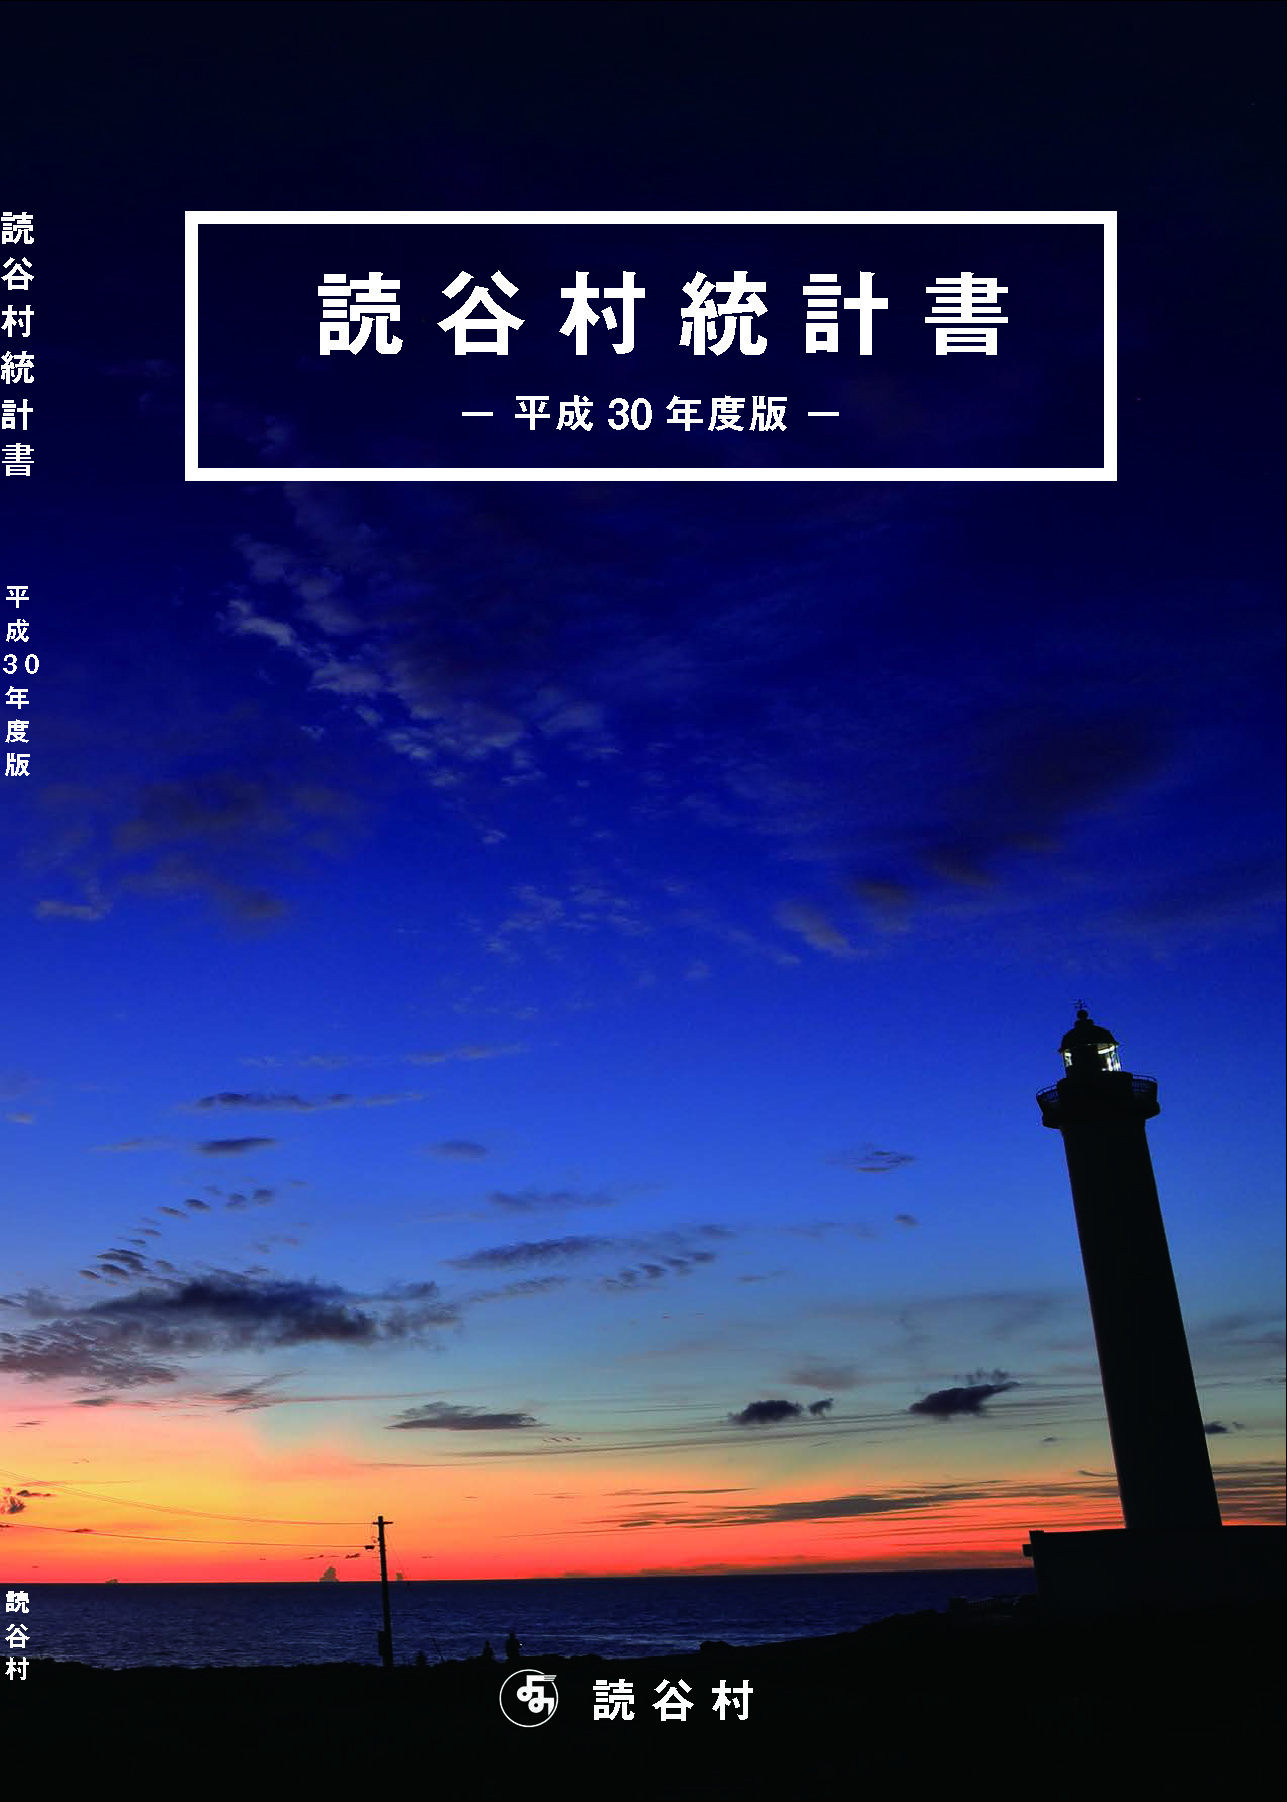 残波岬フォトコンテスト入賞作品「残波岬灯台」の写真が使われた平成30年度読谷村統計書の表紙